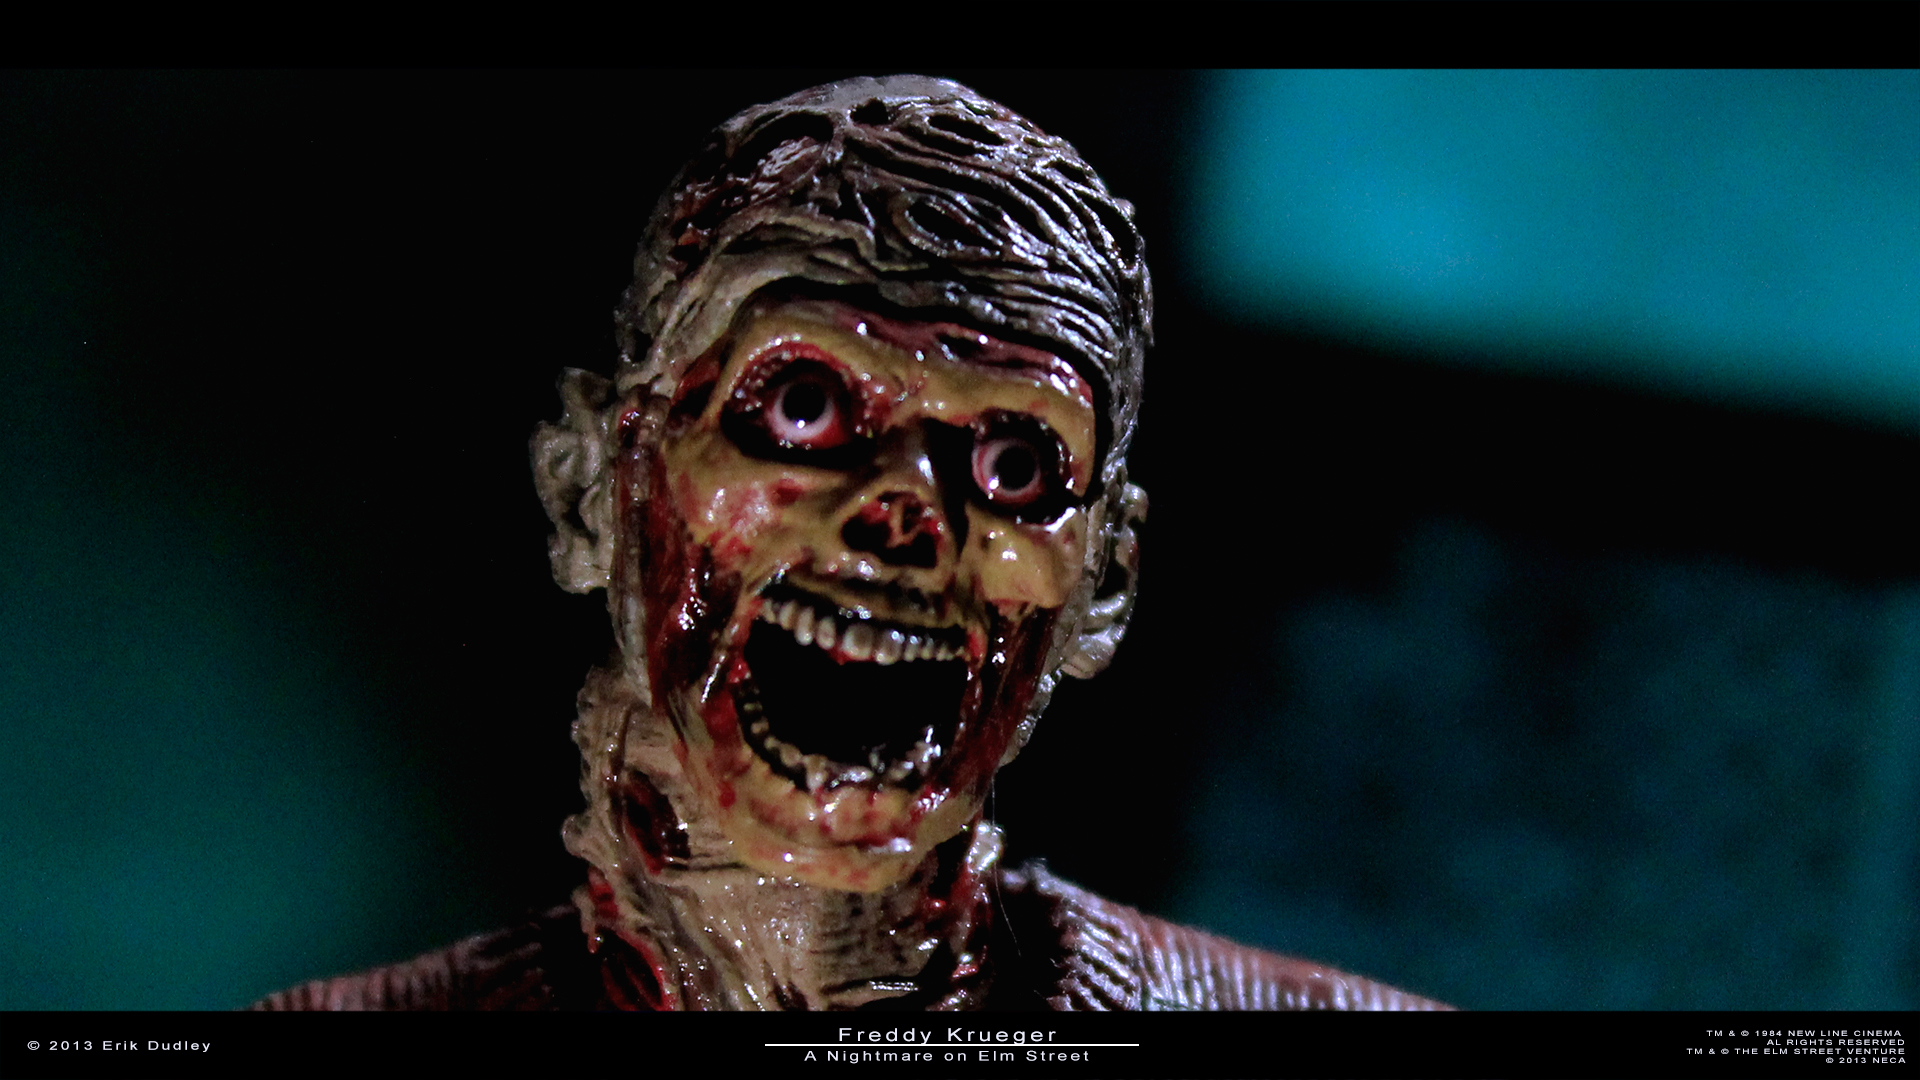 Freddy Krueger - A Nightmare on Elm Street by erikthedud